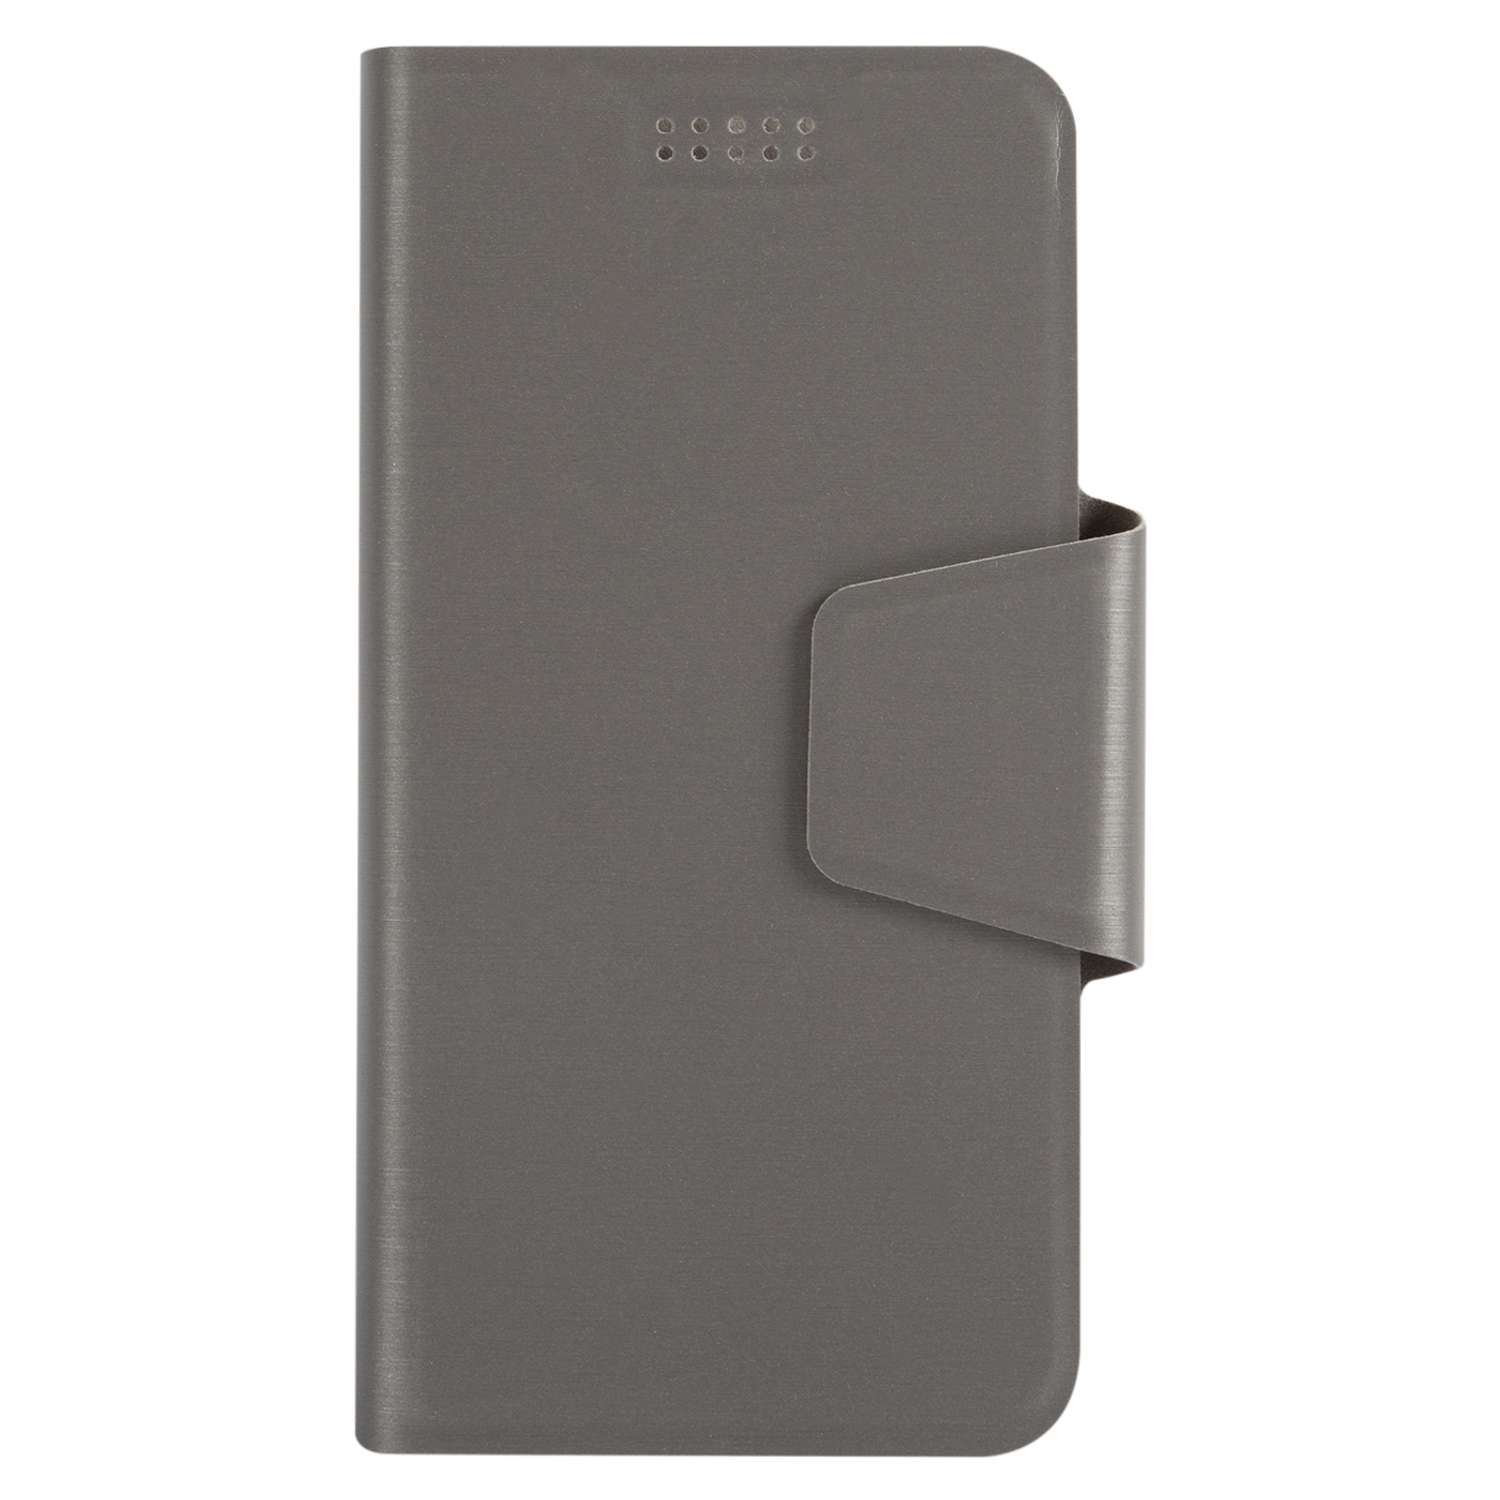 Чехол универсальный iBox UniMotion для телефонов 3.5-4.5 дюйма серый - фото 4